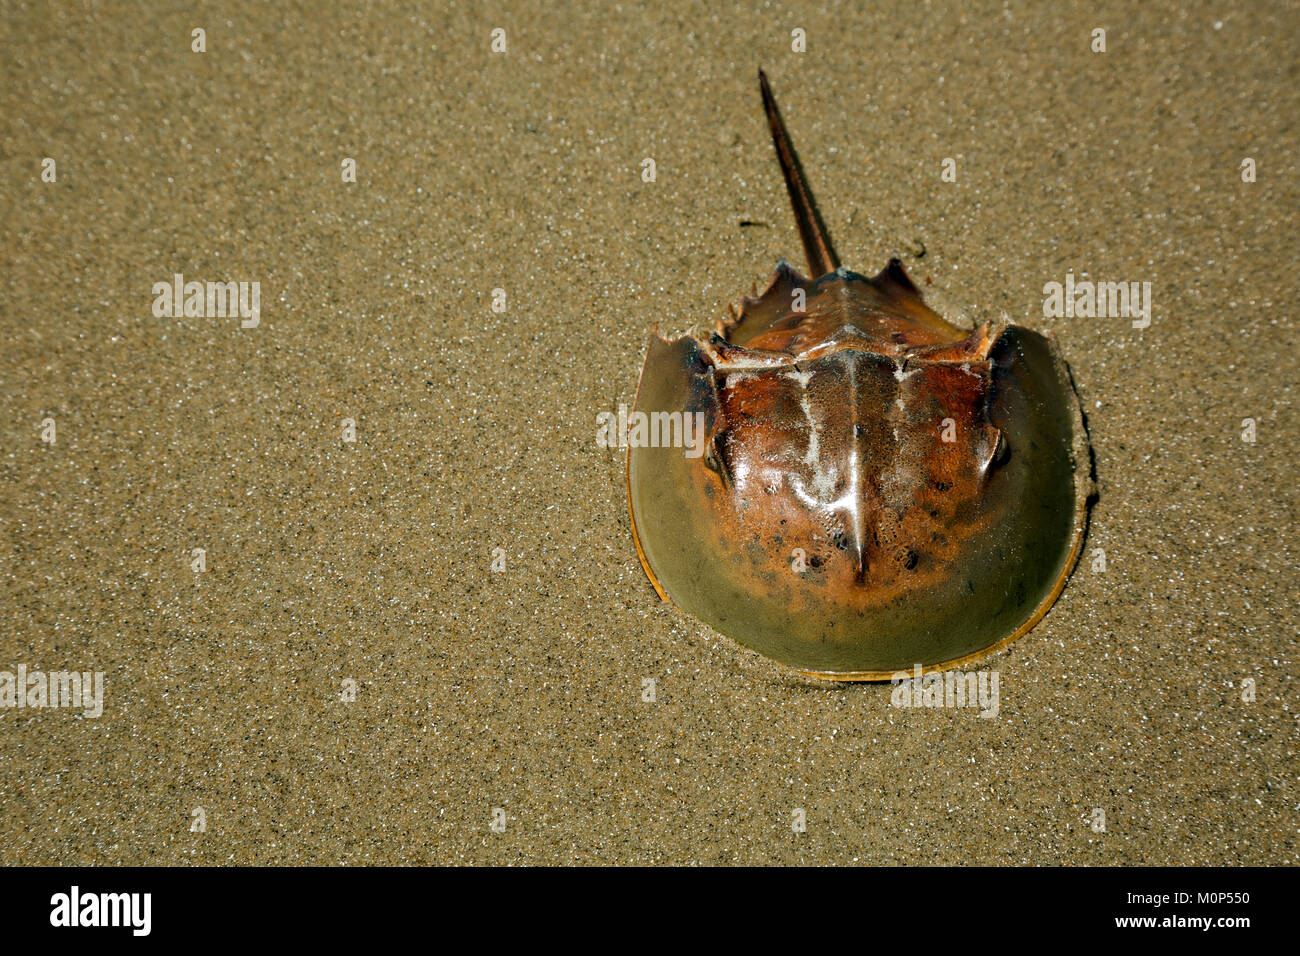 NC01412-00...CAROLINA DEL NORTE - El duro caparazón del límulo encontradas a lo largo de las playas de arena de la Outer Banks. Foto de stock